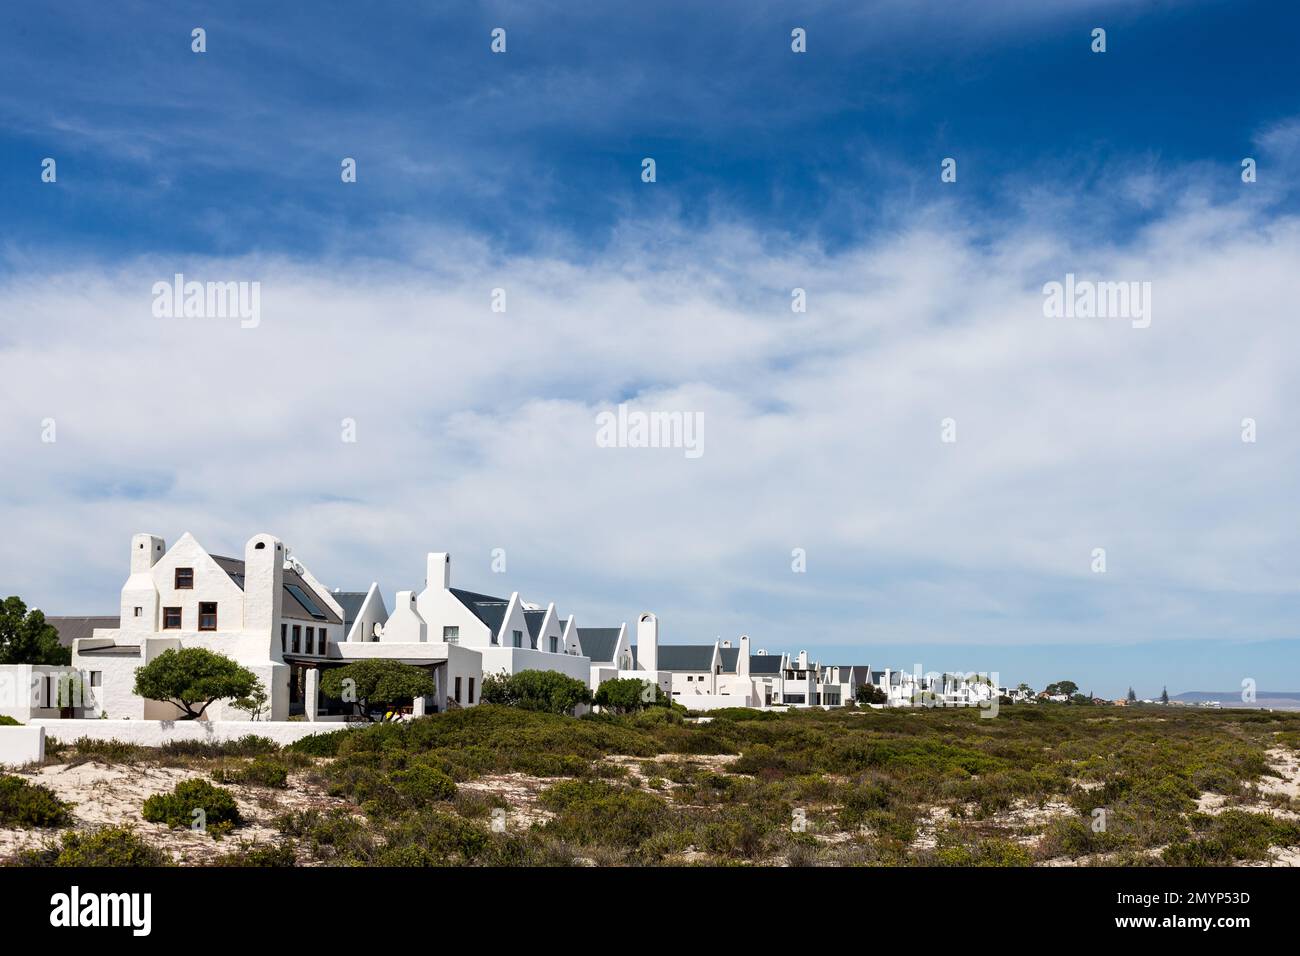 Eine Reihe weißer Häuser in mediterraner Architektur in einer ländlichen Küstenstadt am Westkap, Südafrika Stockfoto